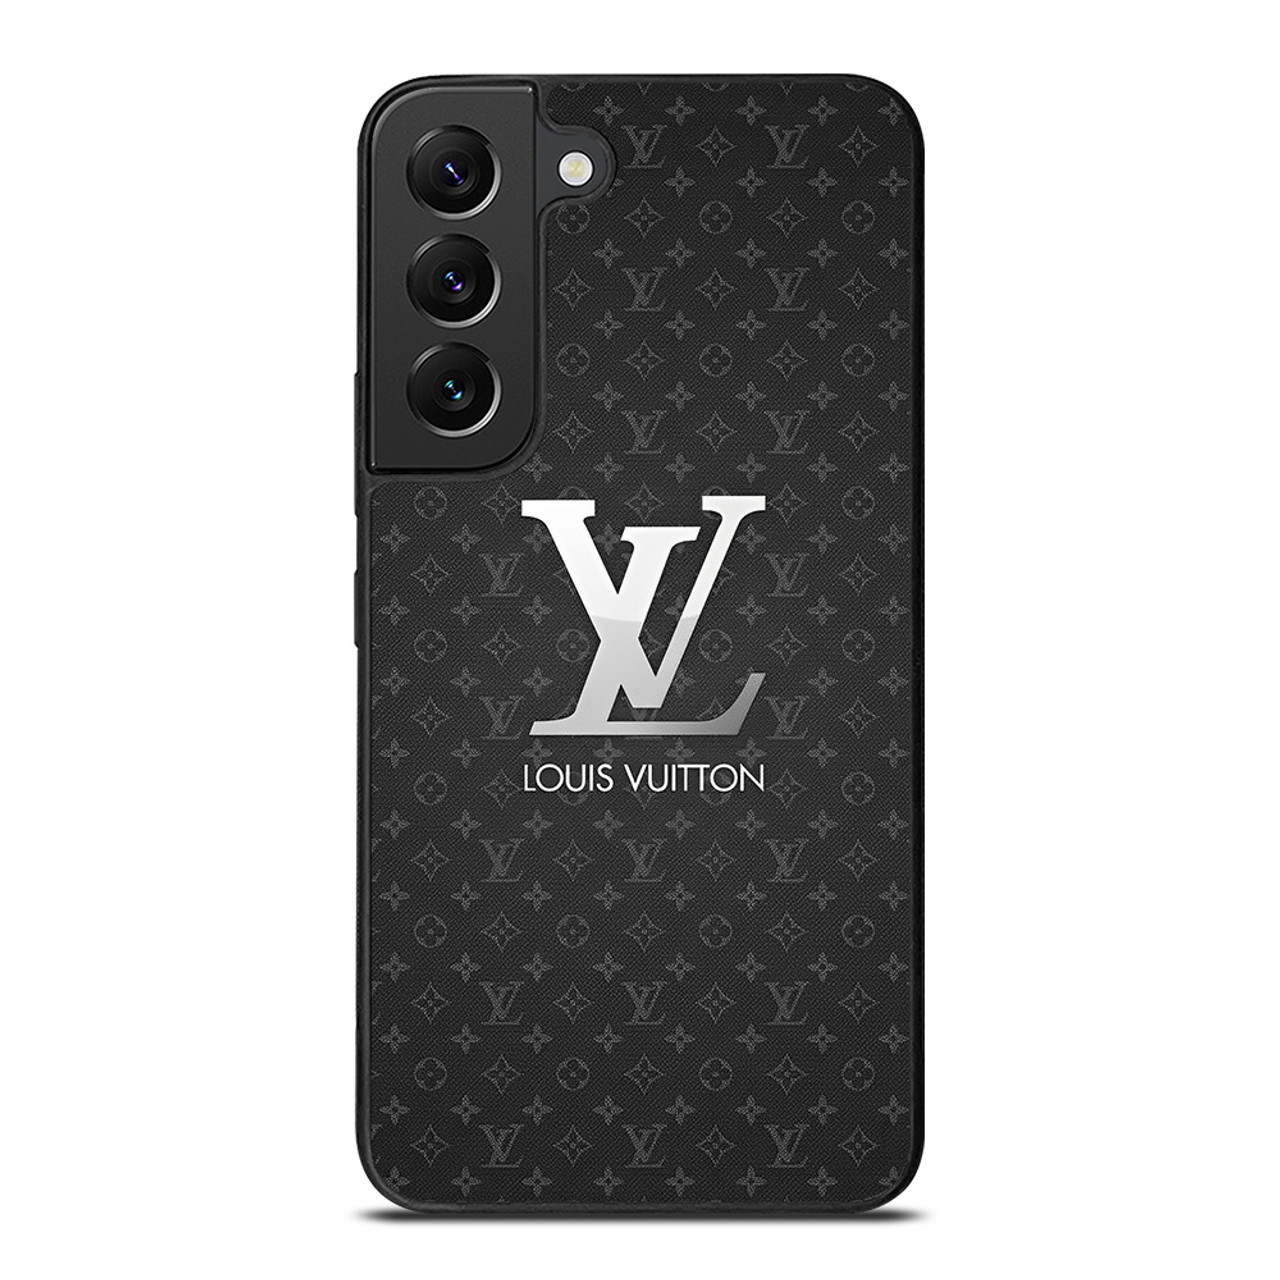 LOUIS VUITTON LV LOGO ICON Samsung Galaxy S22 Case Cover